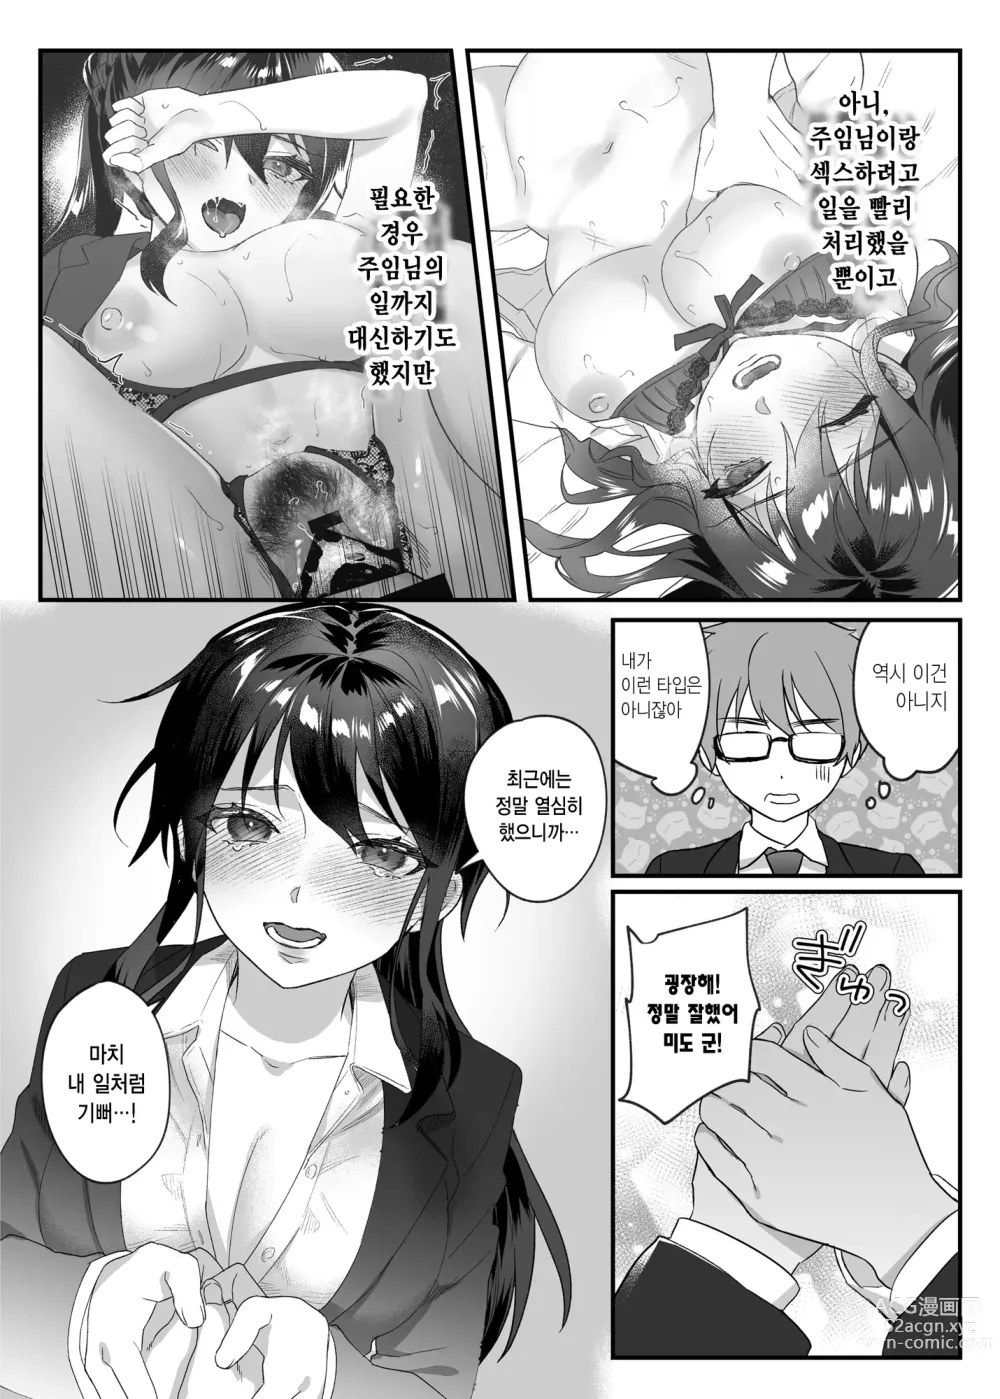 Page 170 of doujinshi nikukyu 총집편 첫번쨰